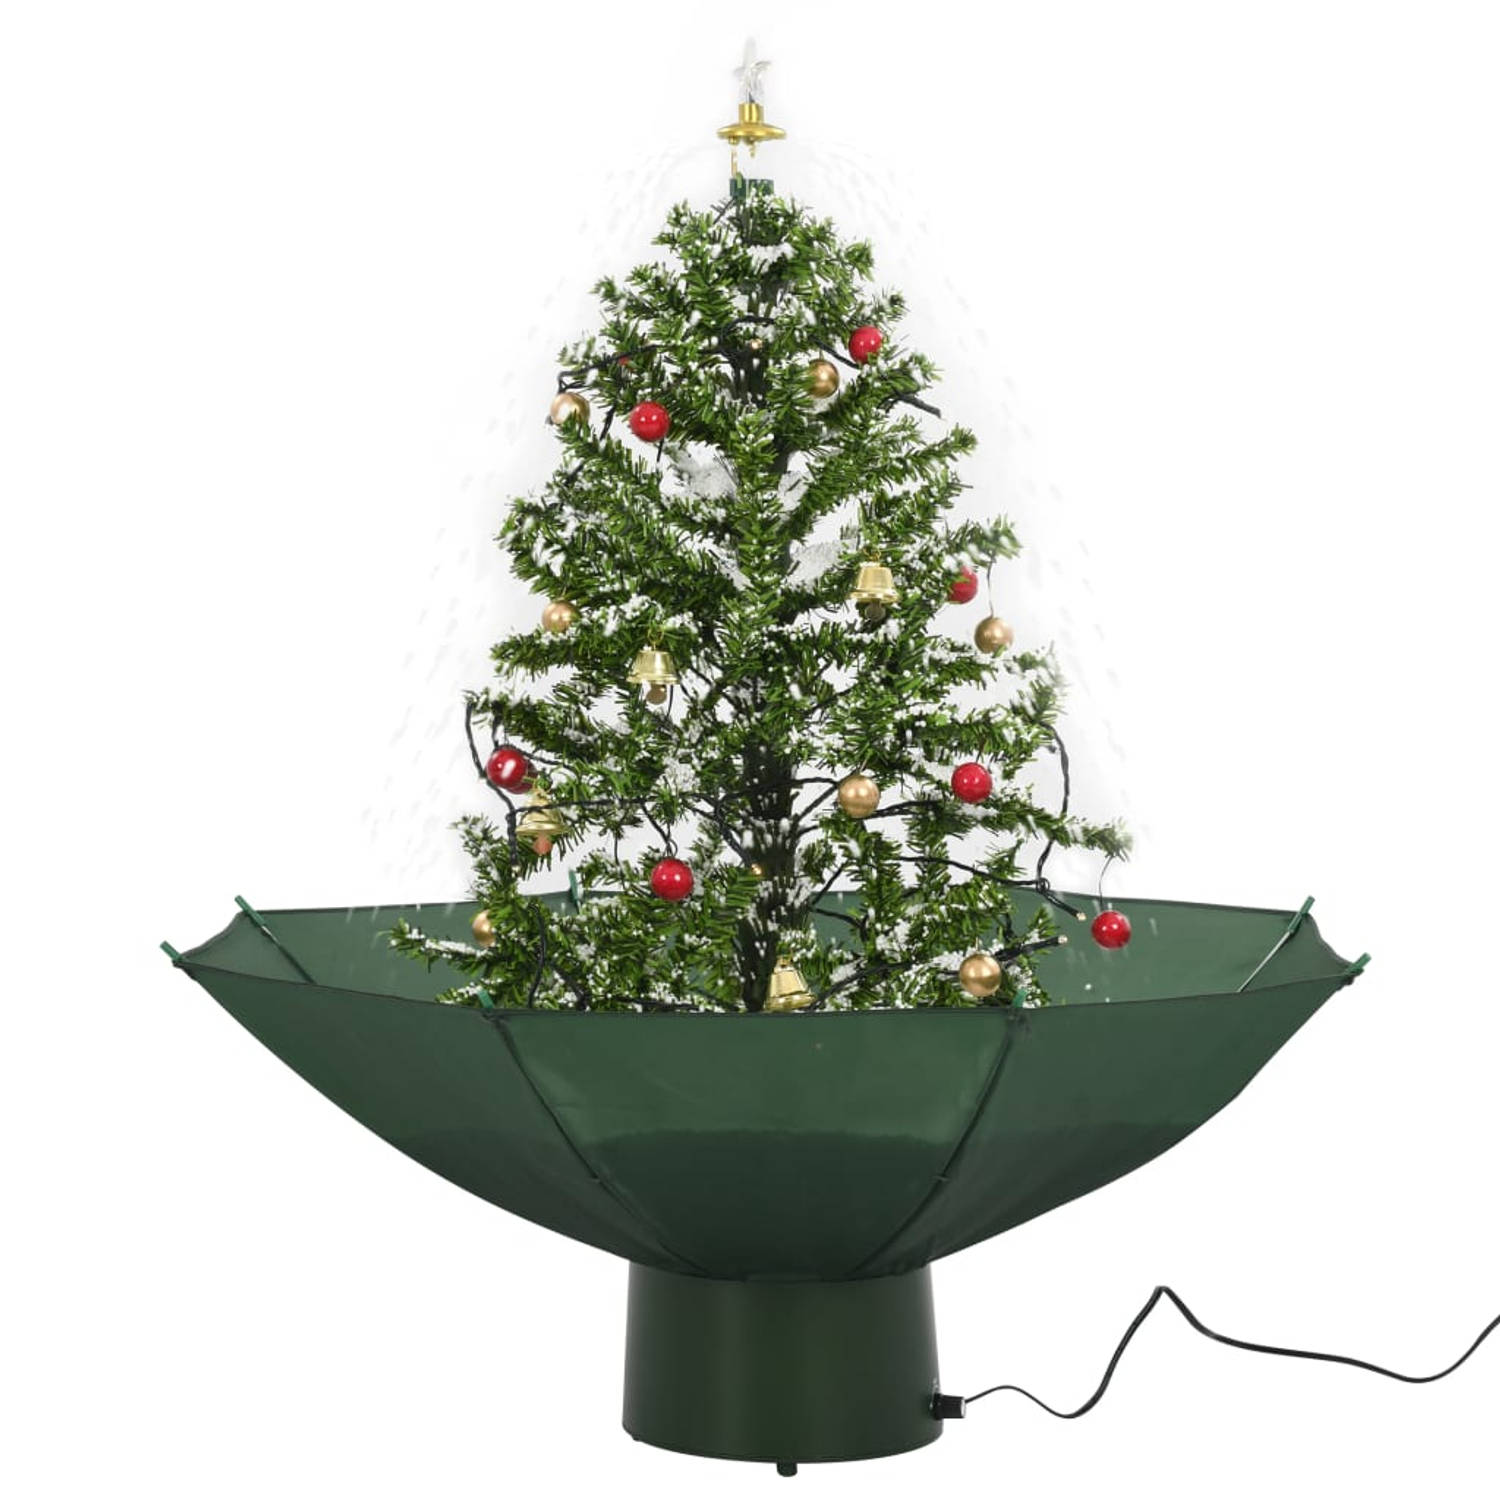 The Living Store Kerstboom sneeuwend met paraplubasis 75 cm groen - Decoratieve kerstboom